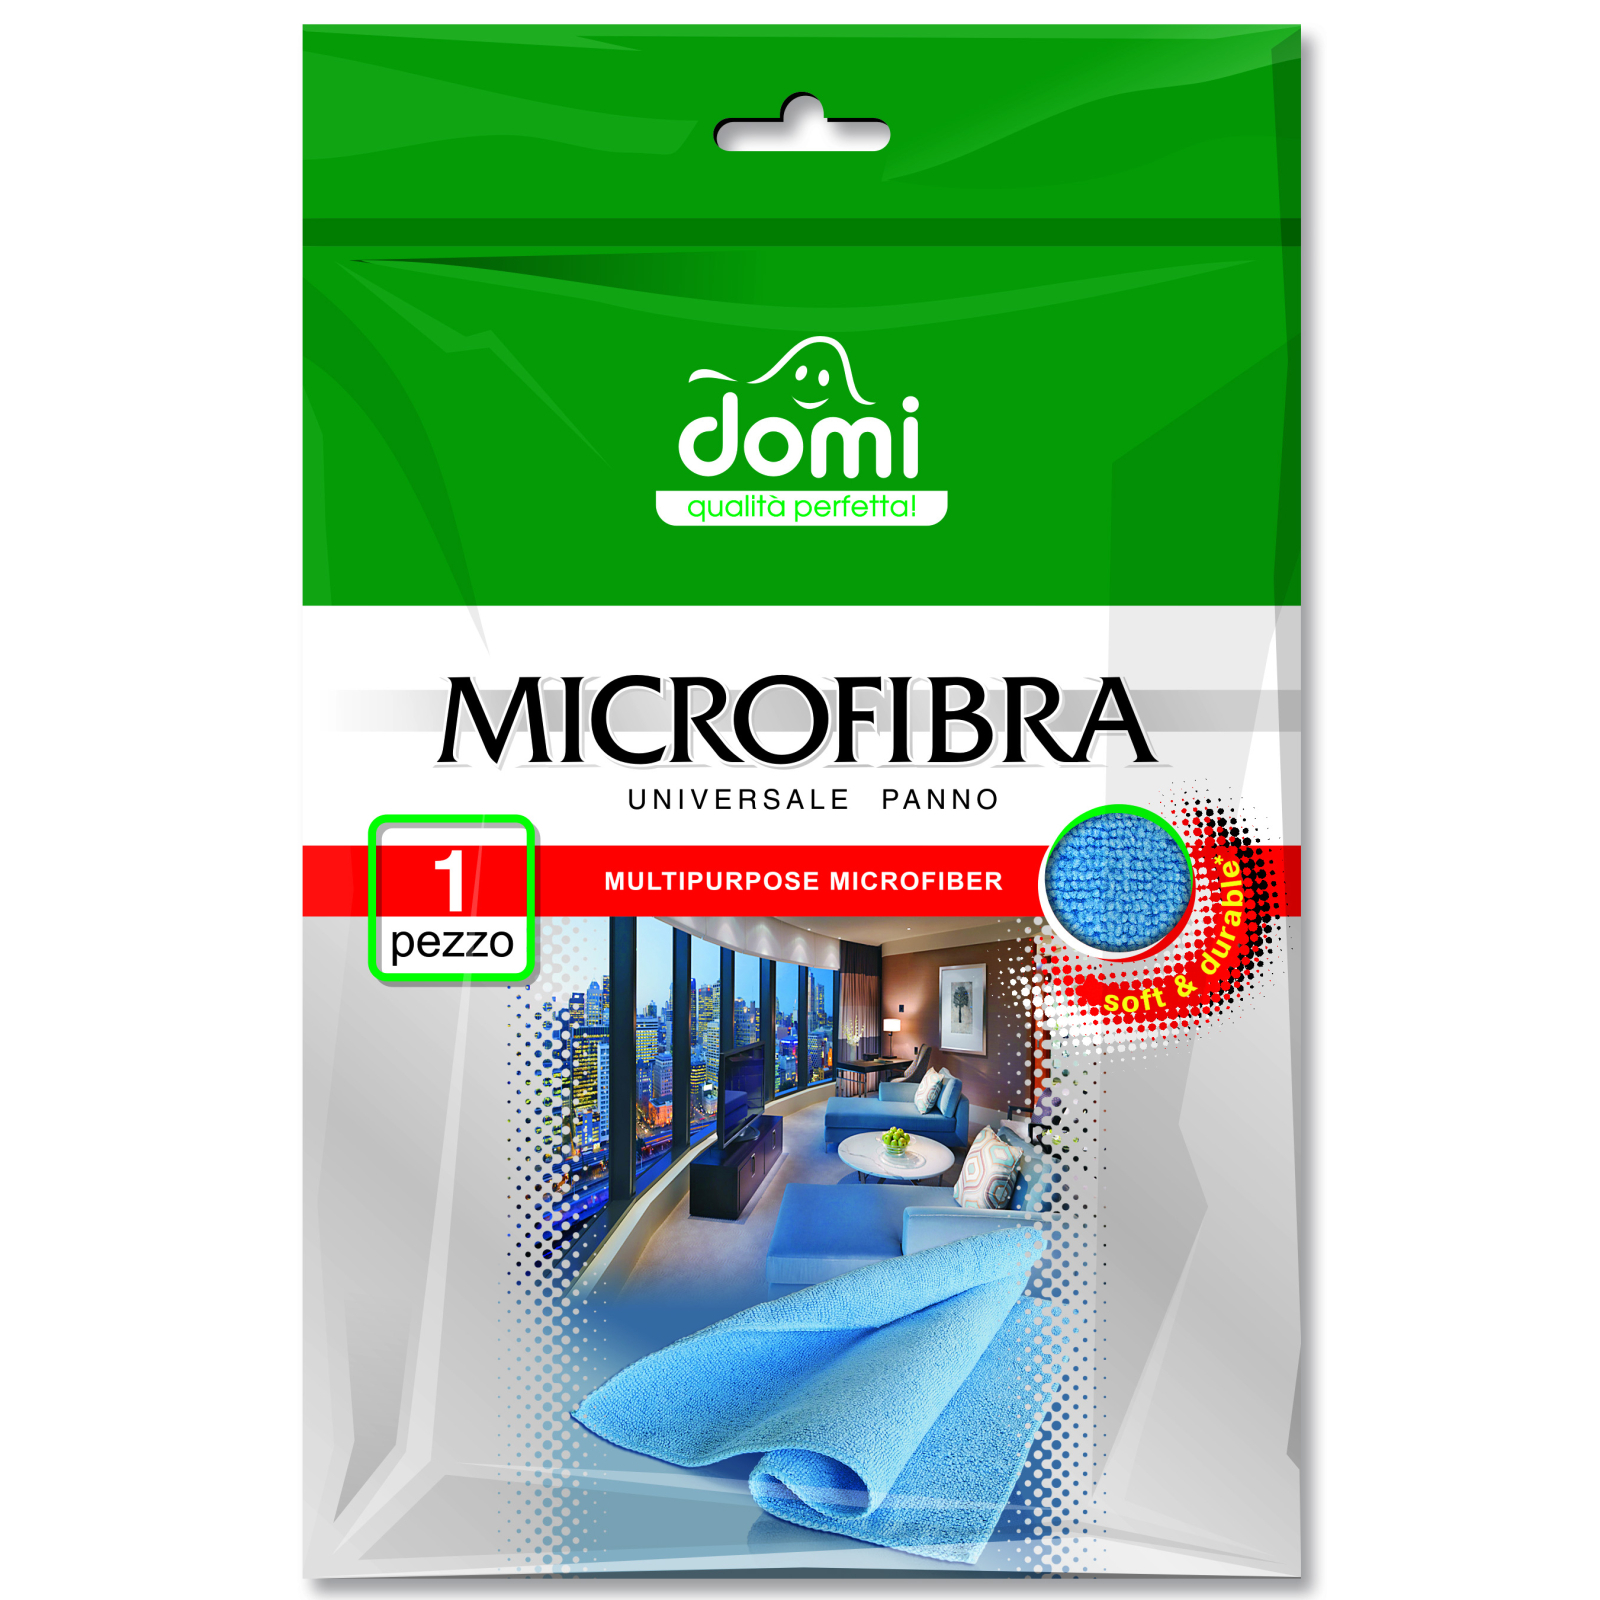 Серветки для прибирання Domi микрофибра универсальная 1 шт (4823058300498)